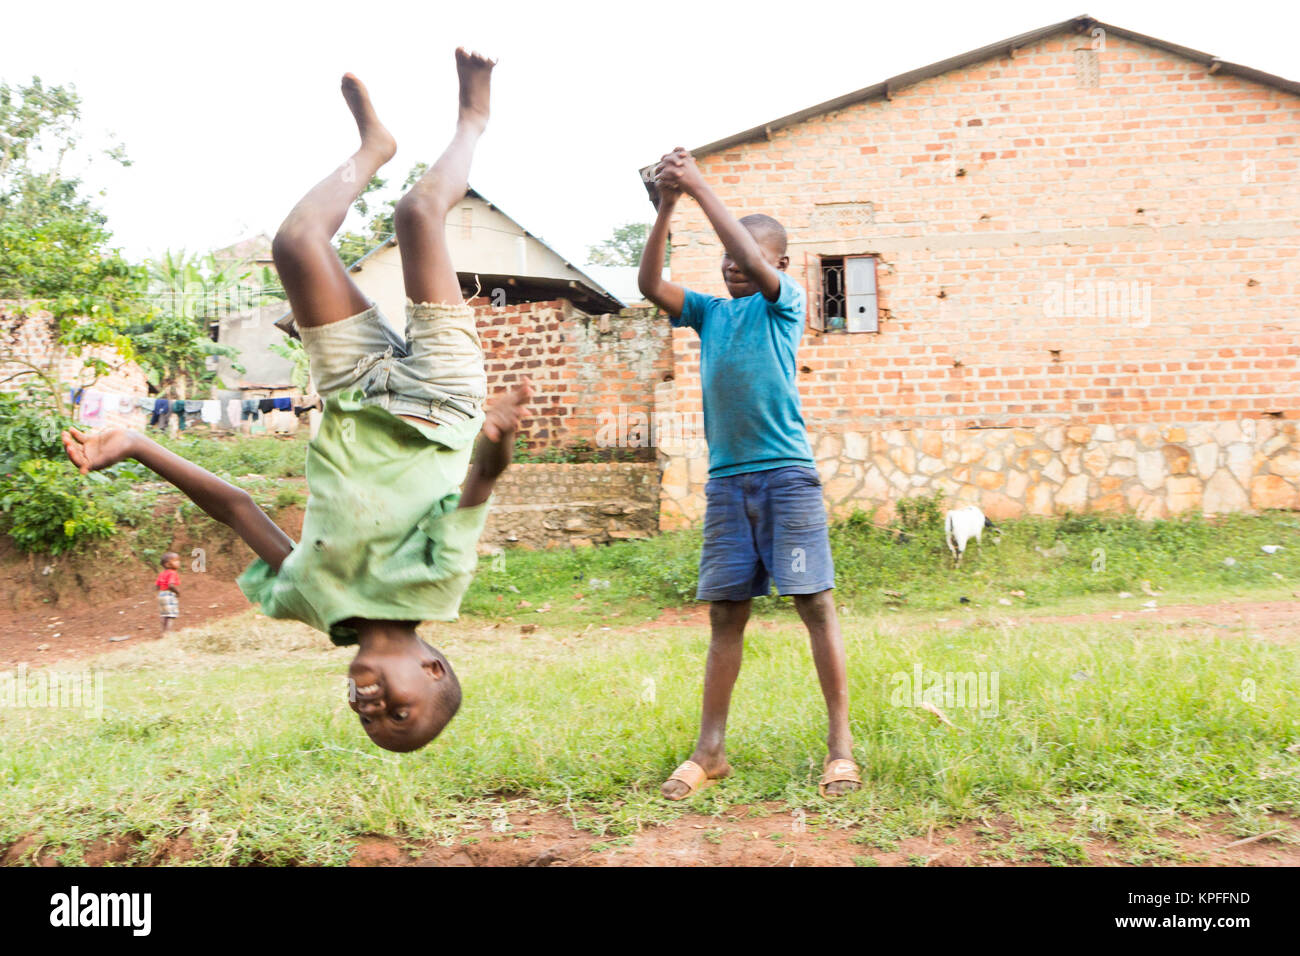 Lugazi, Uganda. 18. Juni 2017. Eine ugandische Junge tut ein Flip in der Luft. Stockfoto